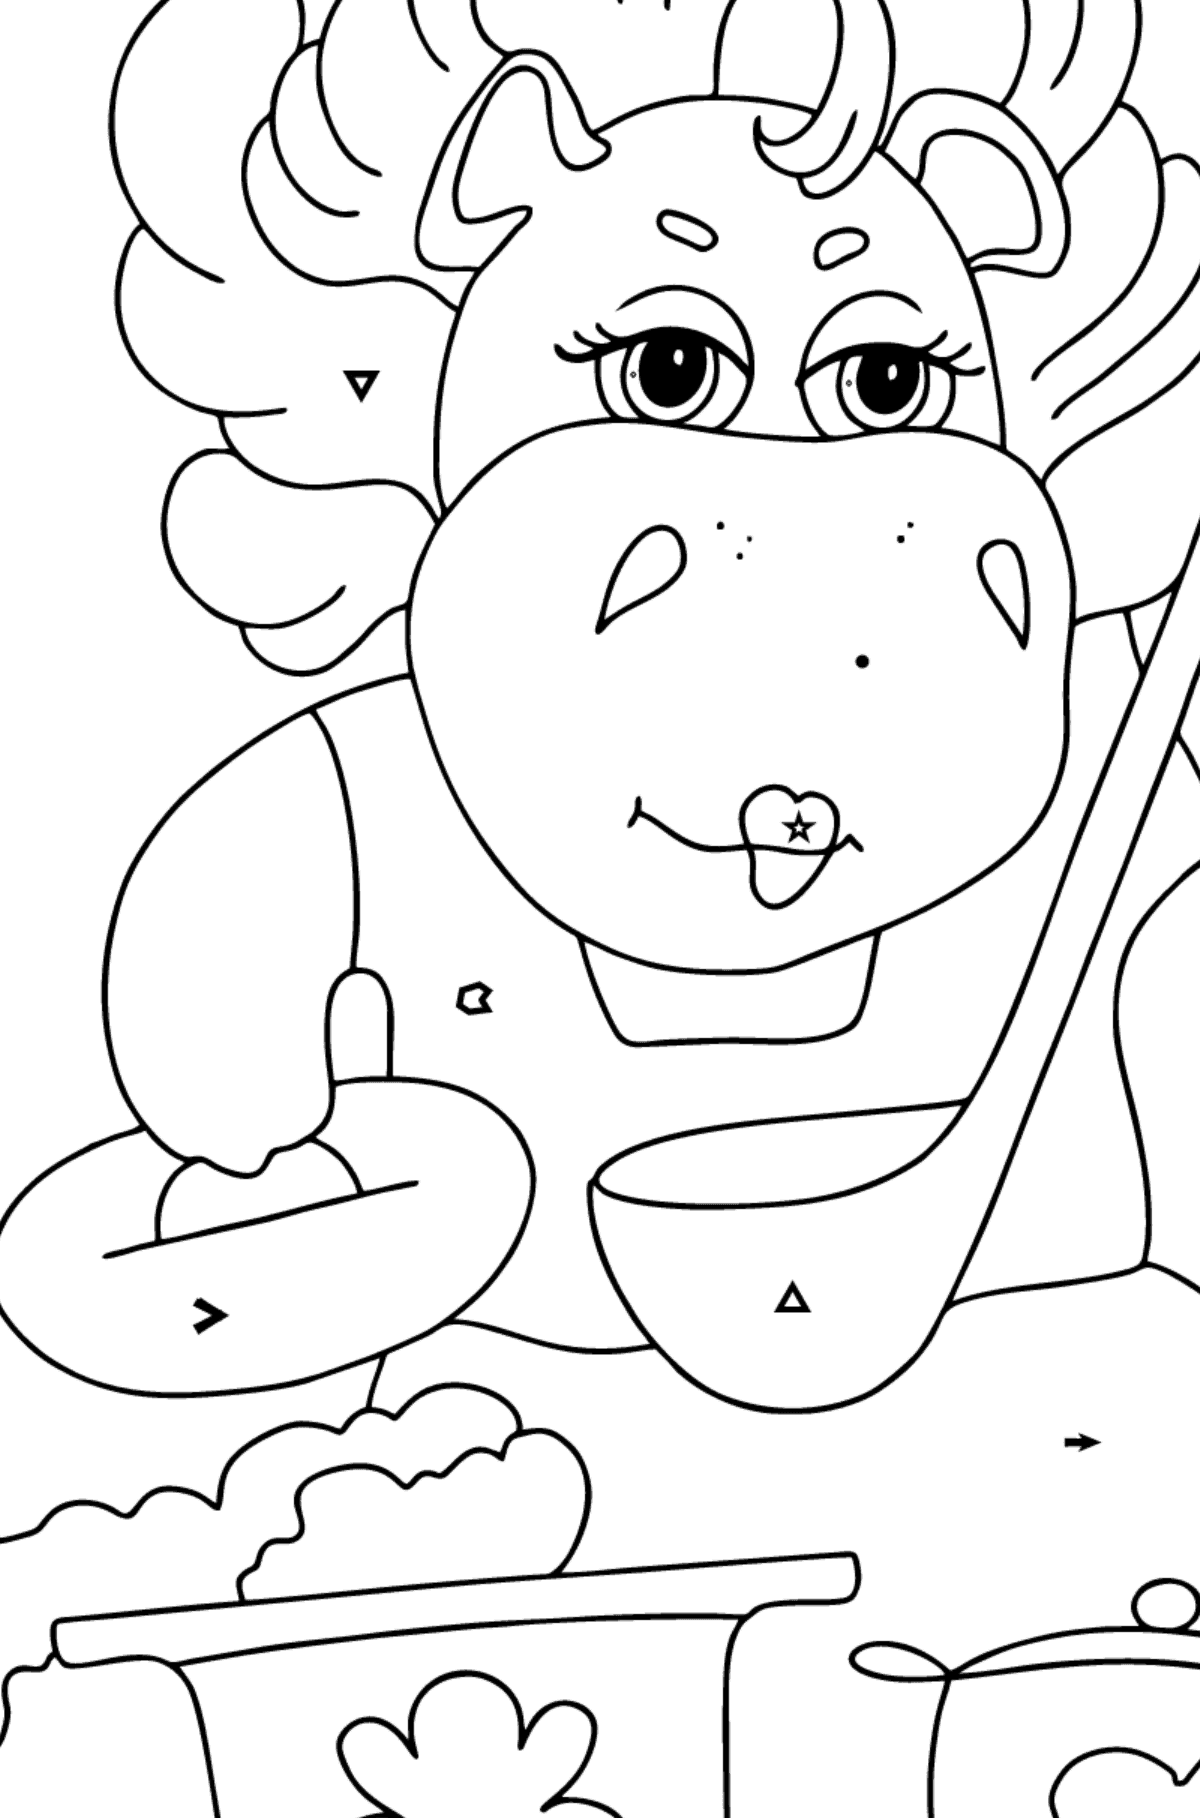 Dibujo de hipopótamo mágico (simple) para colorear - Colorear por Símbolos para Niños